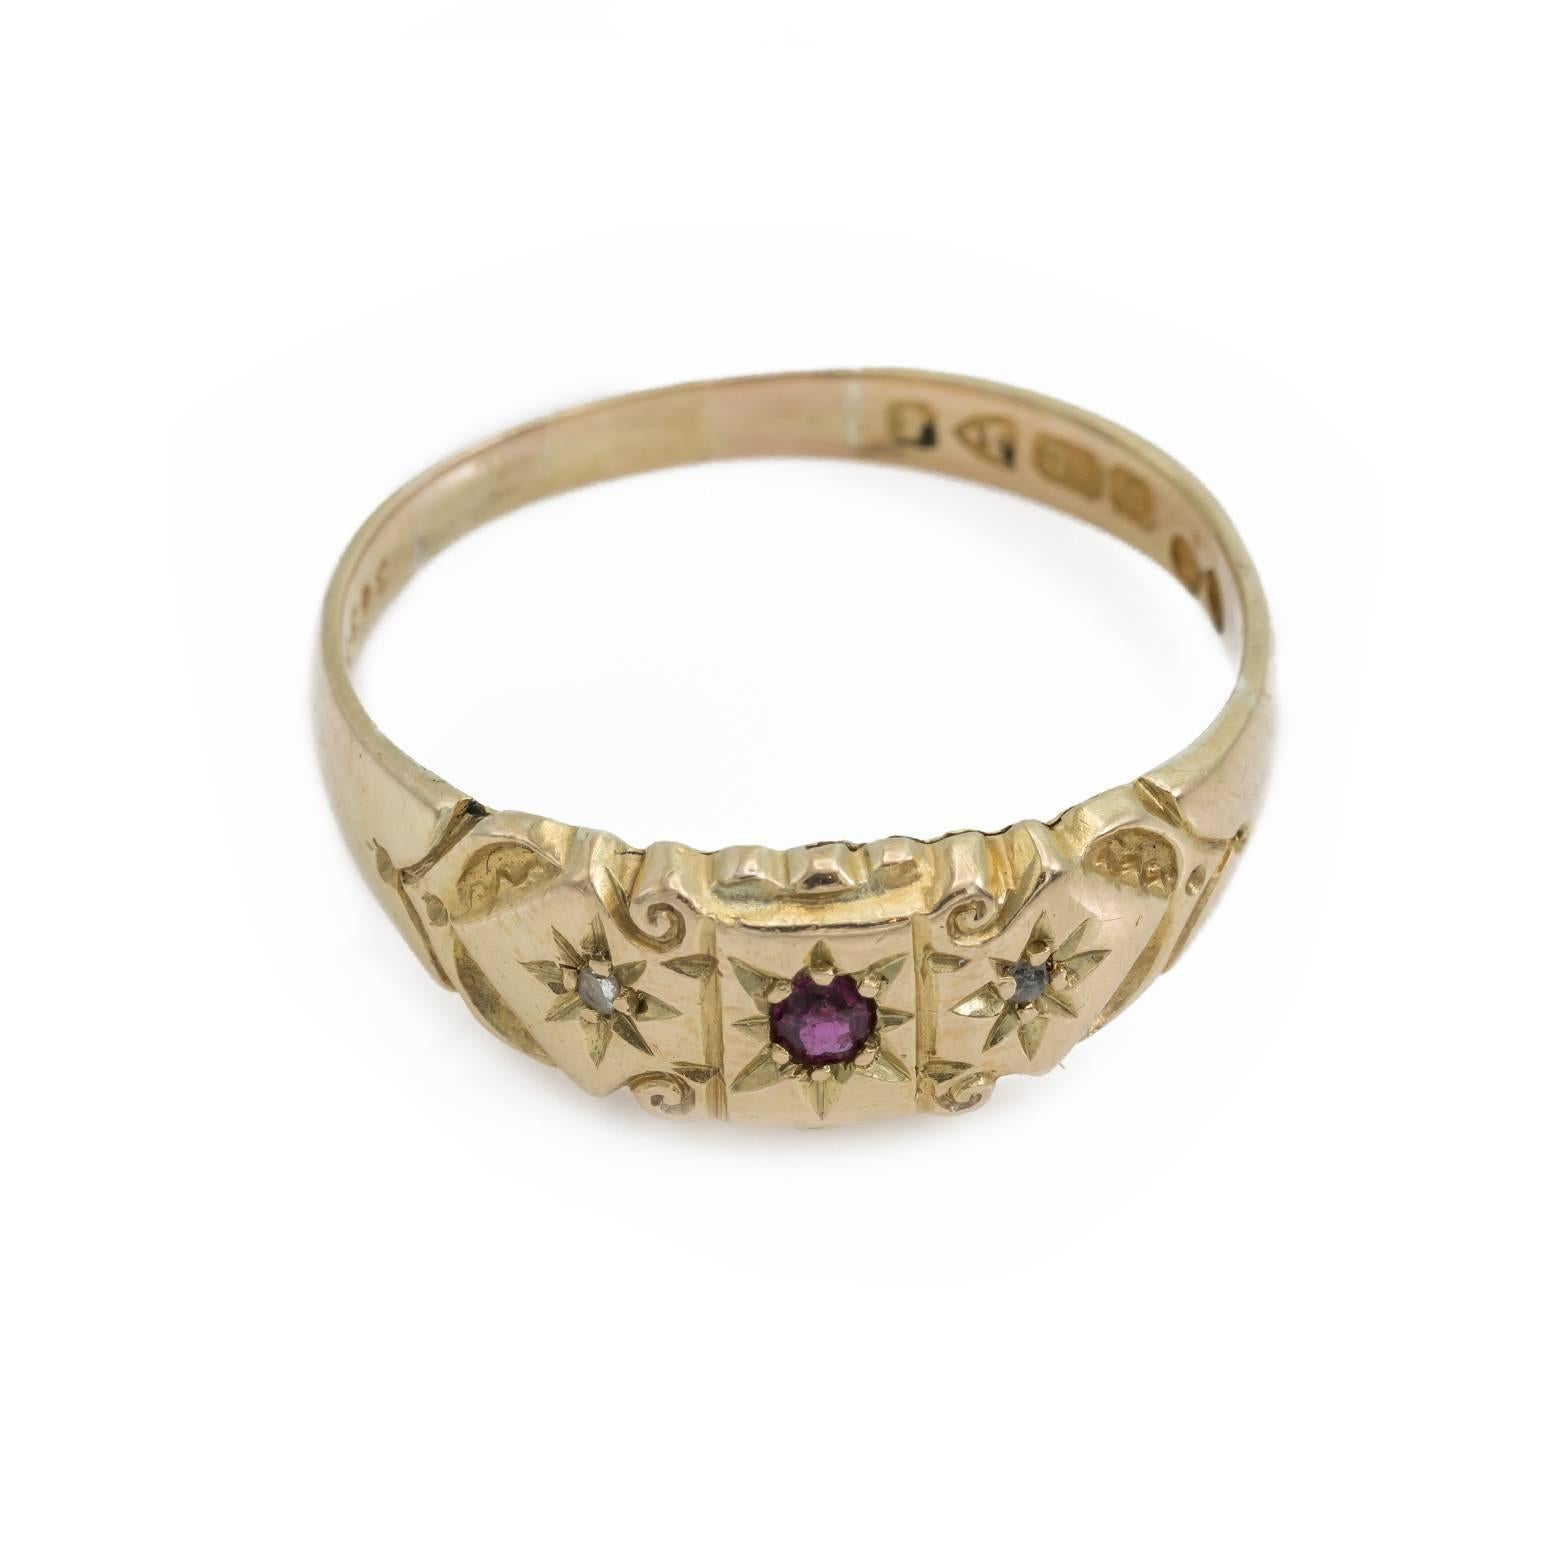 Dieser atemberaubende Rubin- und Diamantring wurde 1905 hergestellt und ist in perfektem Zustand. In die Details sind Spiralen und Sterne eingraviert, die ihm ein magisches und verzaubertes Aussehen verleihen. Größe 10,25 und kann in 18K Gelbgold